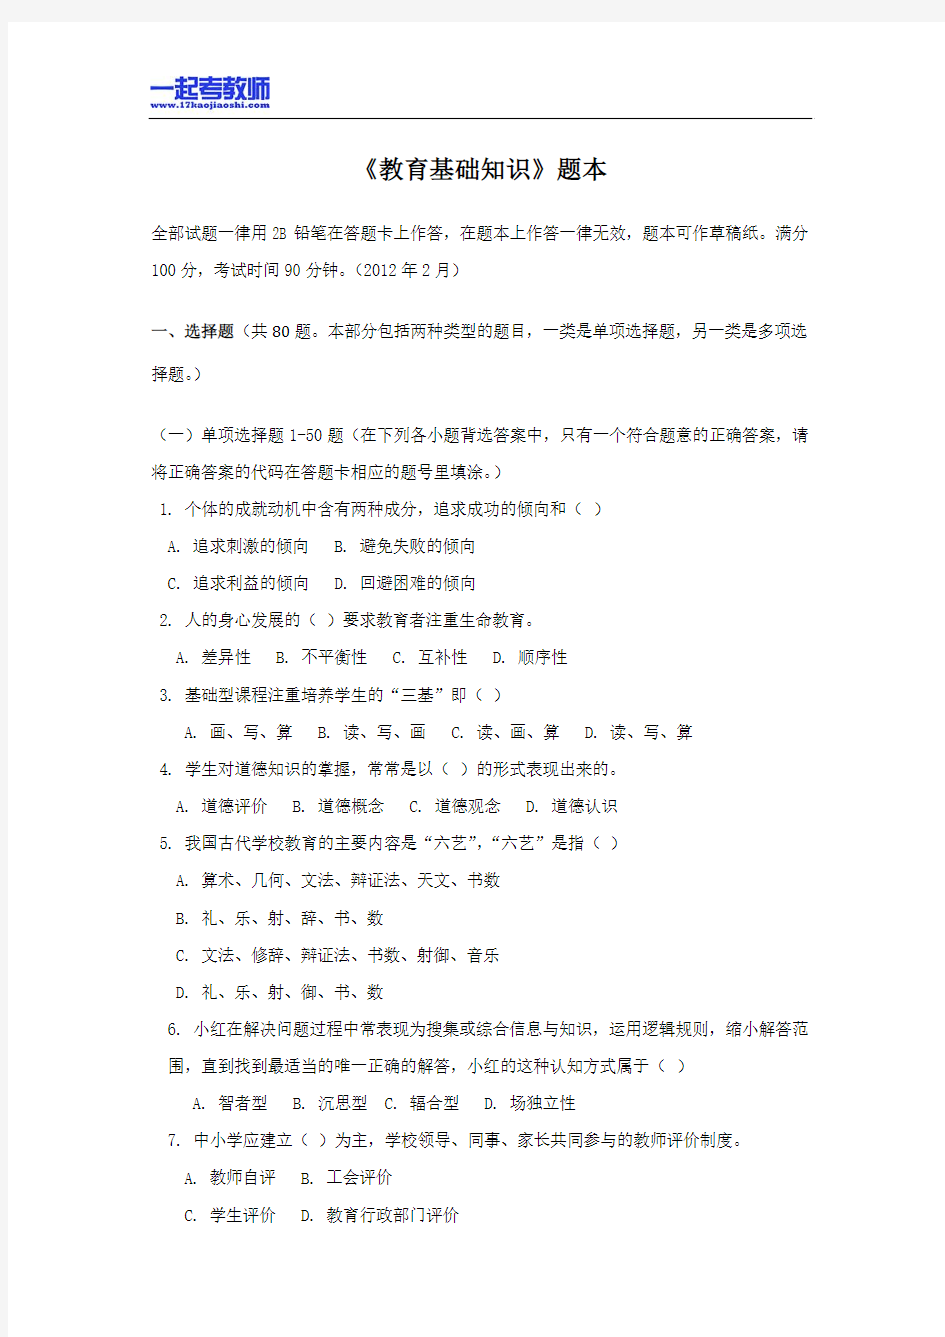 2012年四川省彭州教师招聘考试笔试教育基础知识真题答案解析